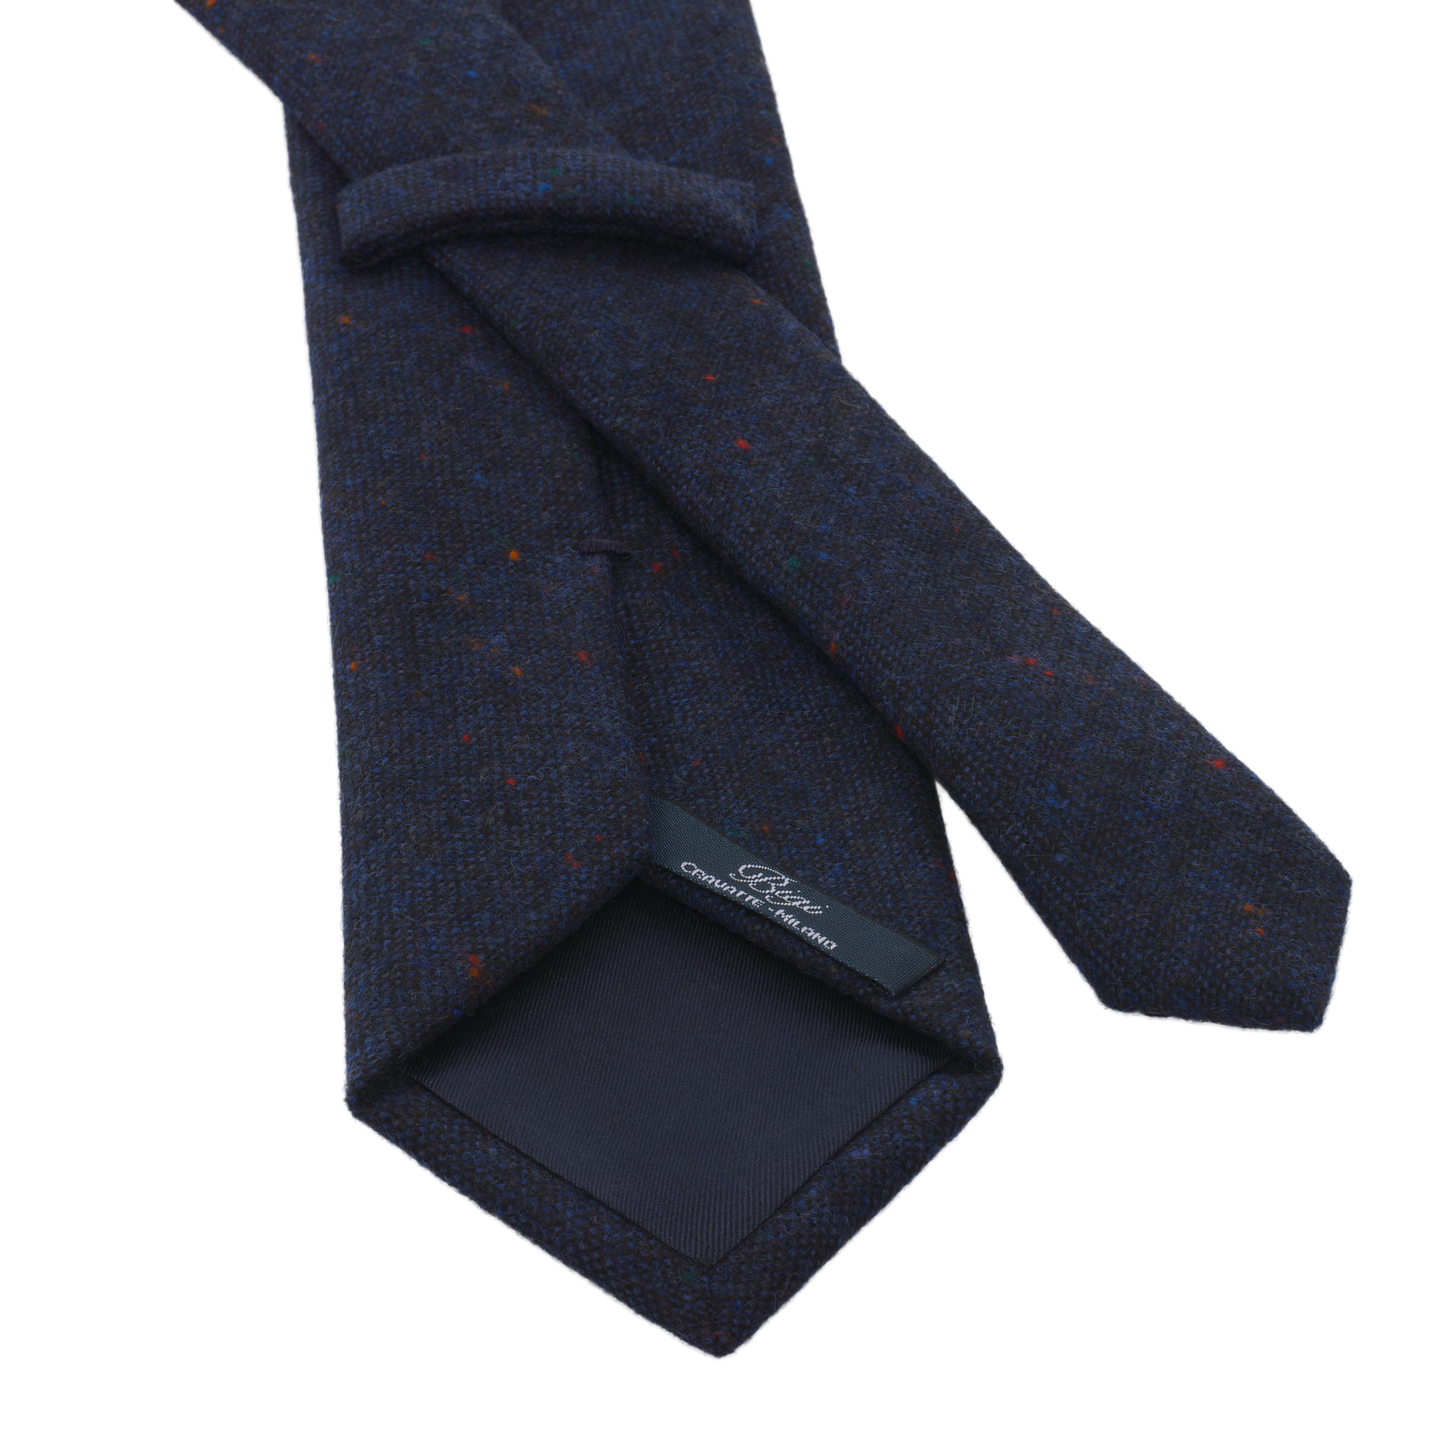 Woven Wool Polka Dot Tie in Blue Melange